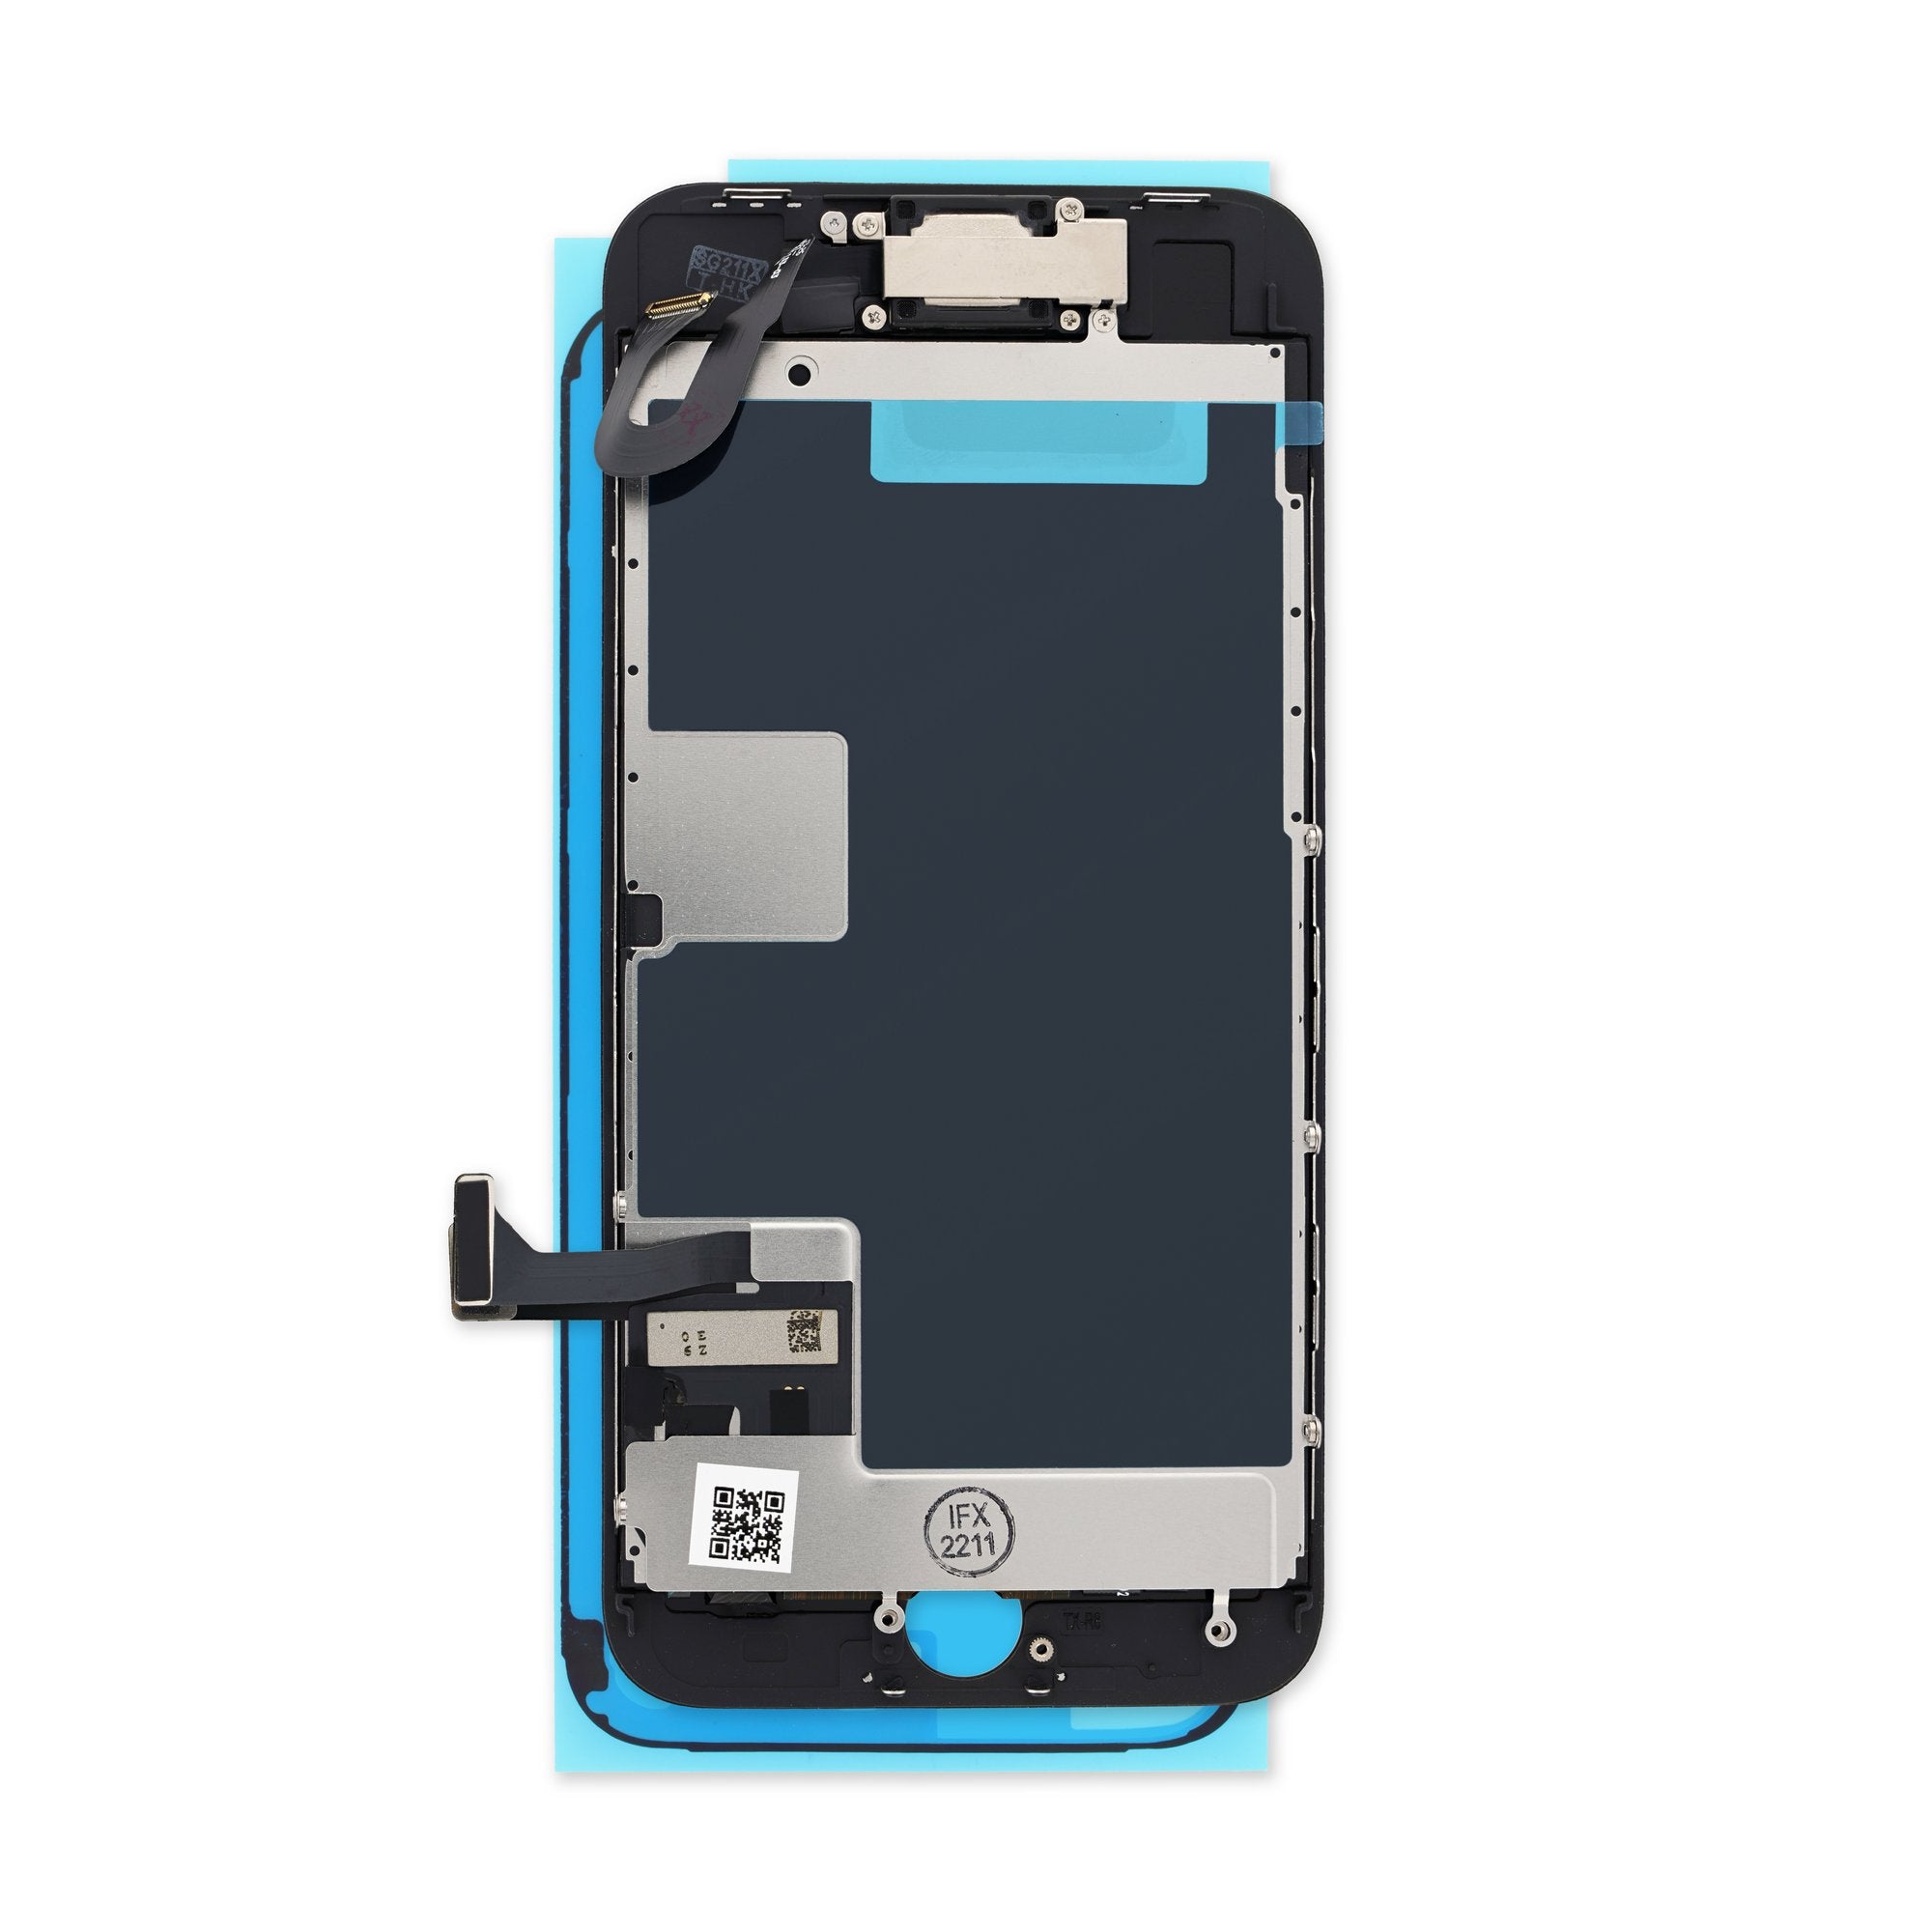 iPhone 8 Screen: LCD + Digitizer Replacement Part, Repair Kit